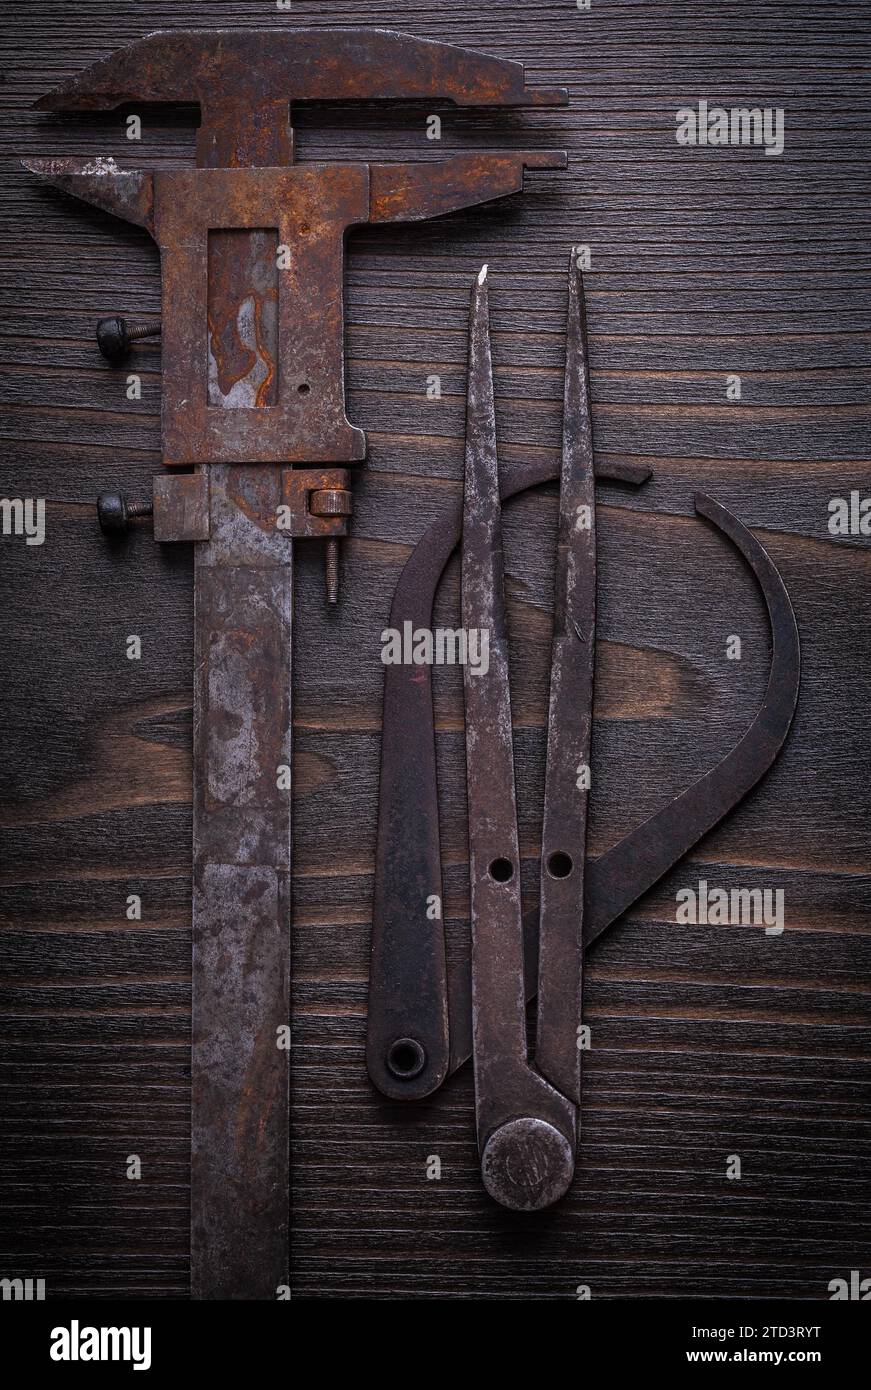 Composition d'échelles de vernier à l'ancienne sur planche de bois vintage Banque D'Images